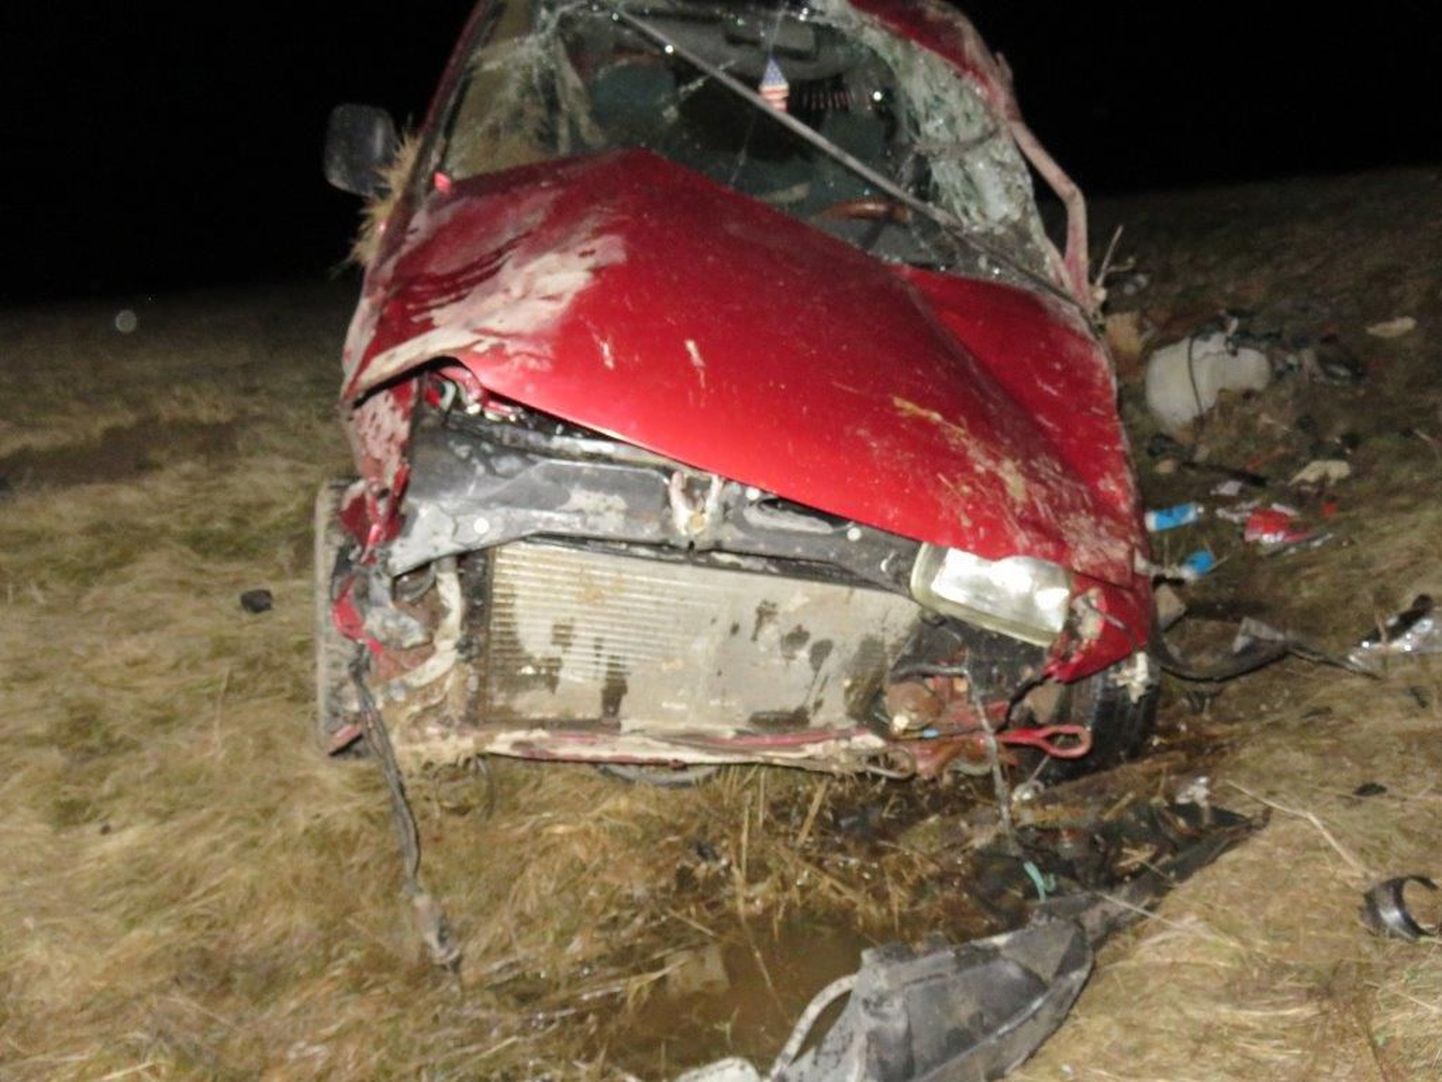 Raskes avariis sai üliraskelt kannatada kaassõitja. Juhiloata autojuht pääses kriimustustega.